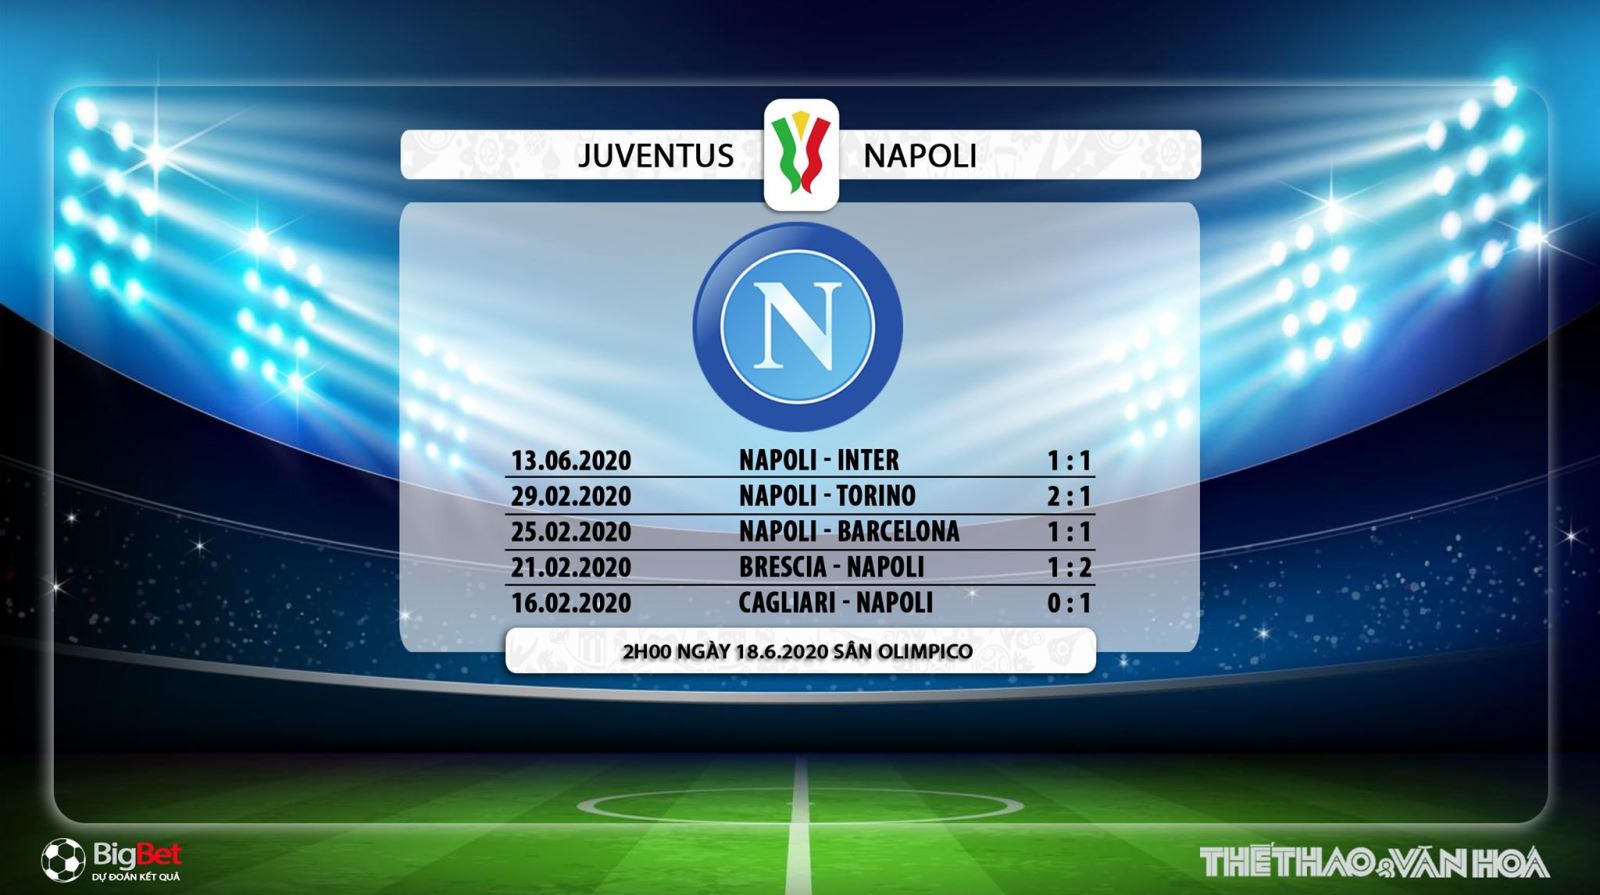 bóng đá, bong da, bóng đá hôm nay, nhận định bóng đá, dự đoán, nhận định, Juventus vs Napoli, kèo bóng đá, juventus, napoli